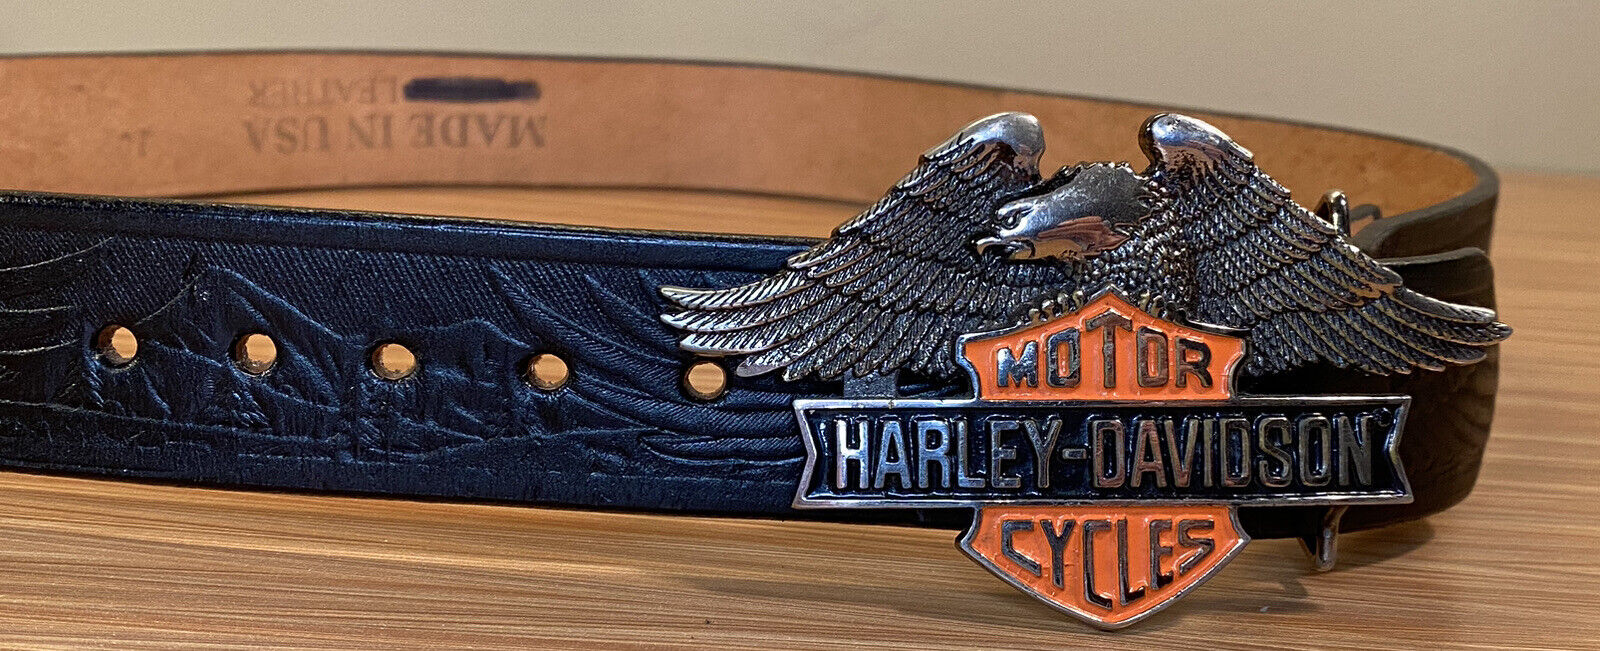 The Harley Davidson Eagle Leather Belt ebay